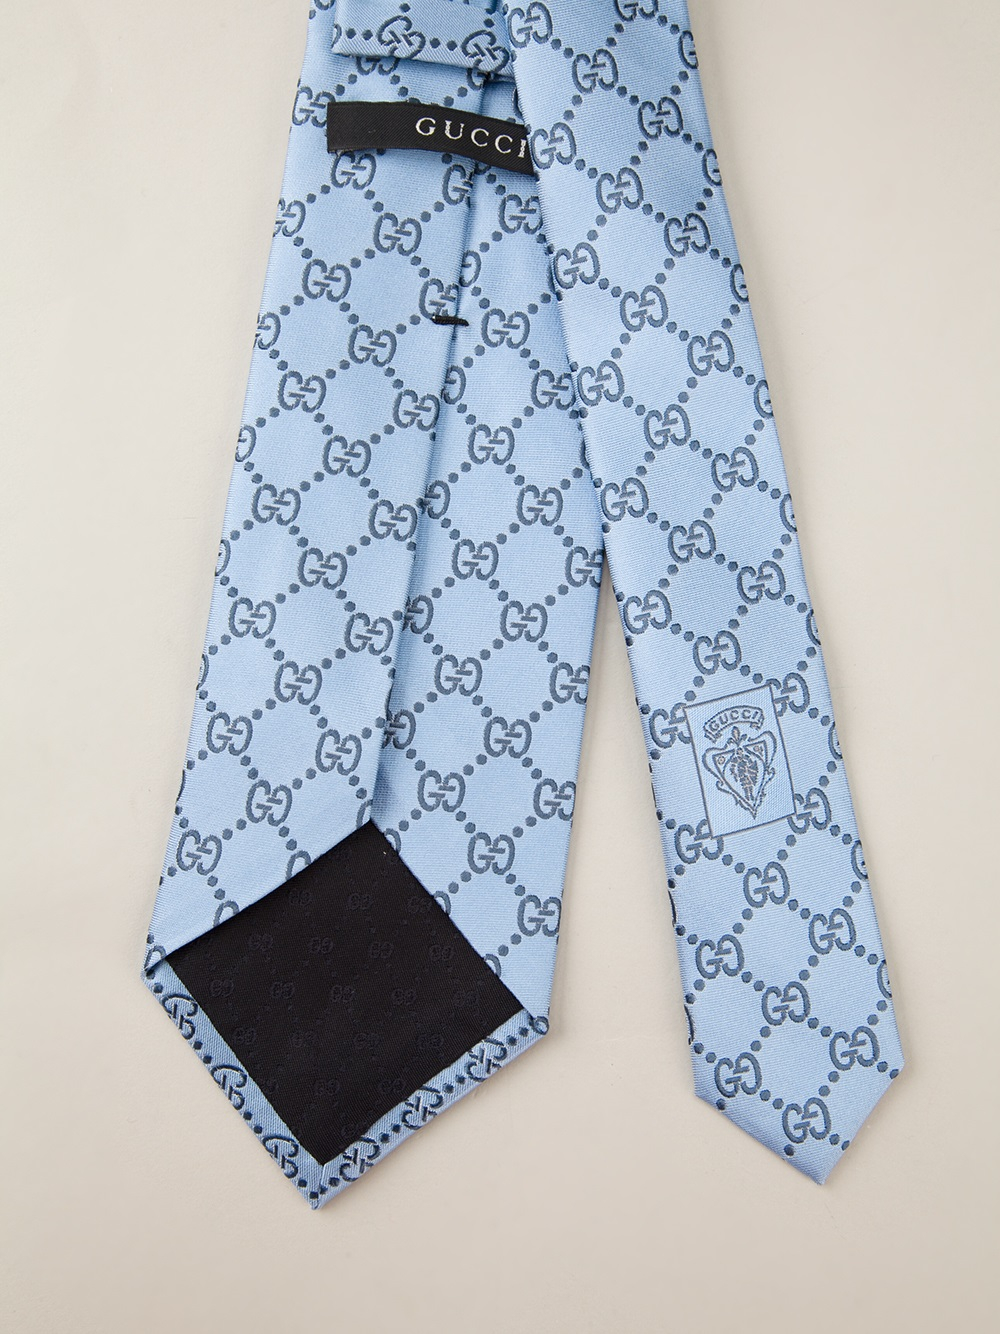 LV or Gucci tie? : r/malefashionadvice